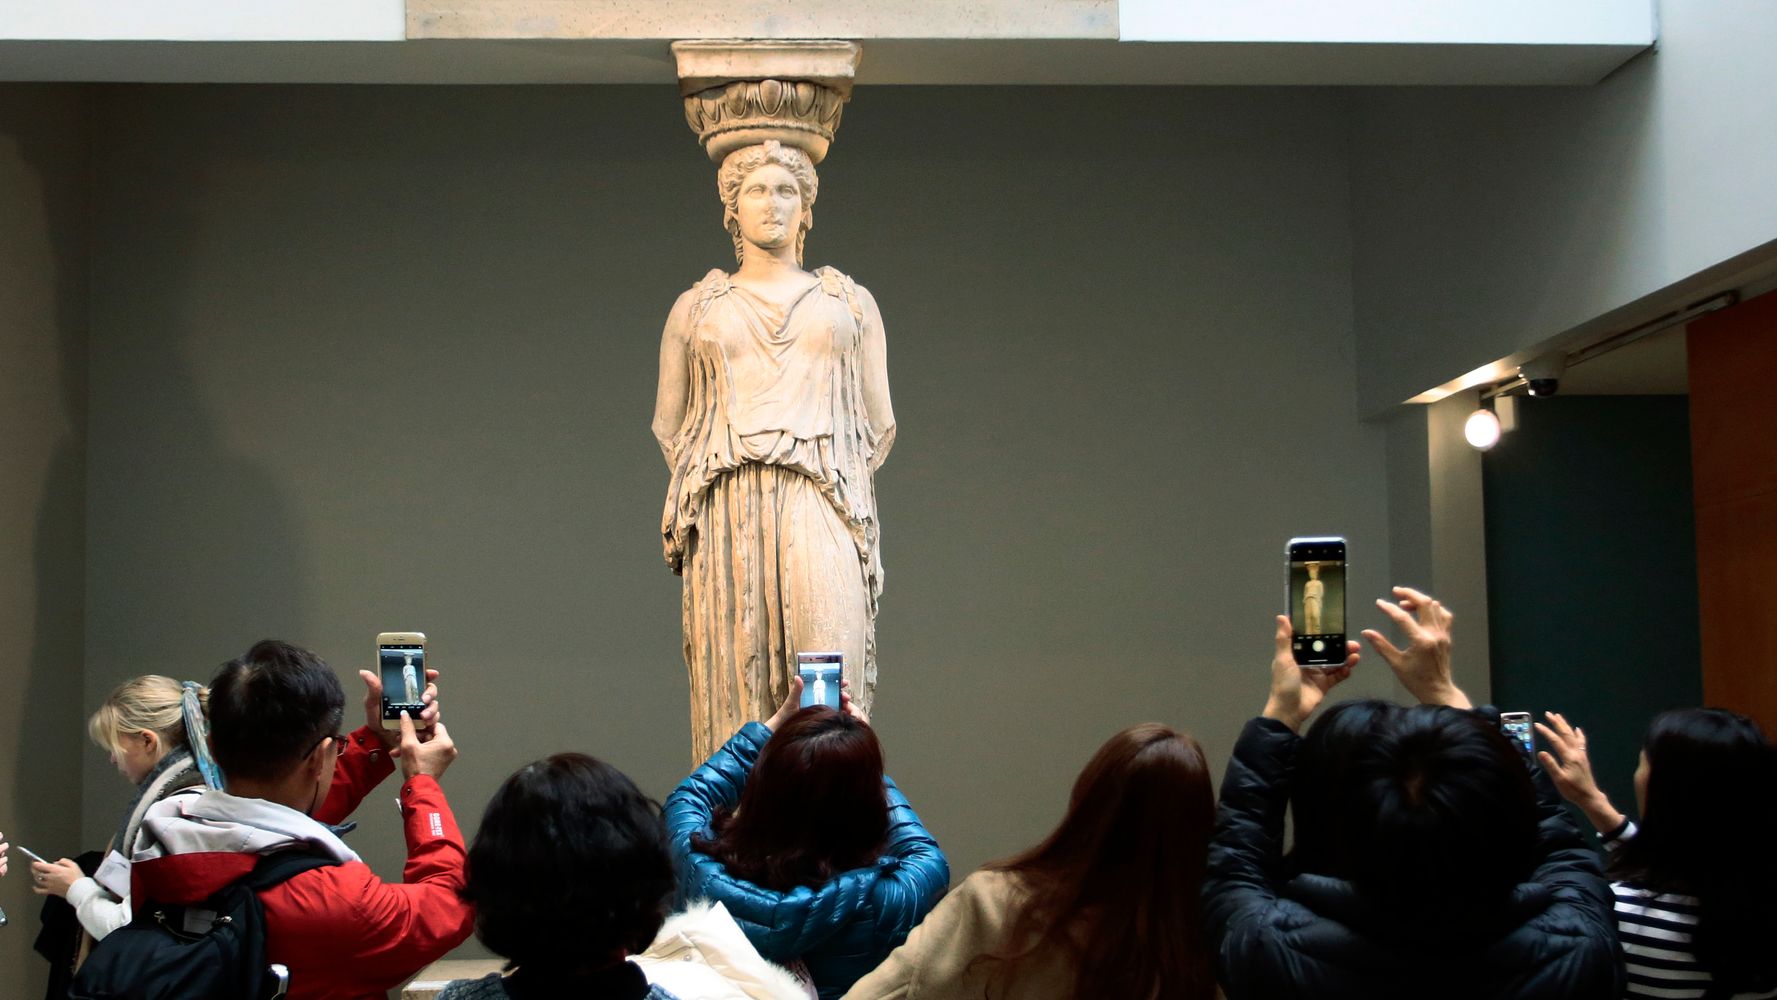 Δείτε τα γλυπτά του Παρθενώνα στο Βρετανικό Μουσείο | HuffPost Greece